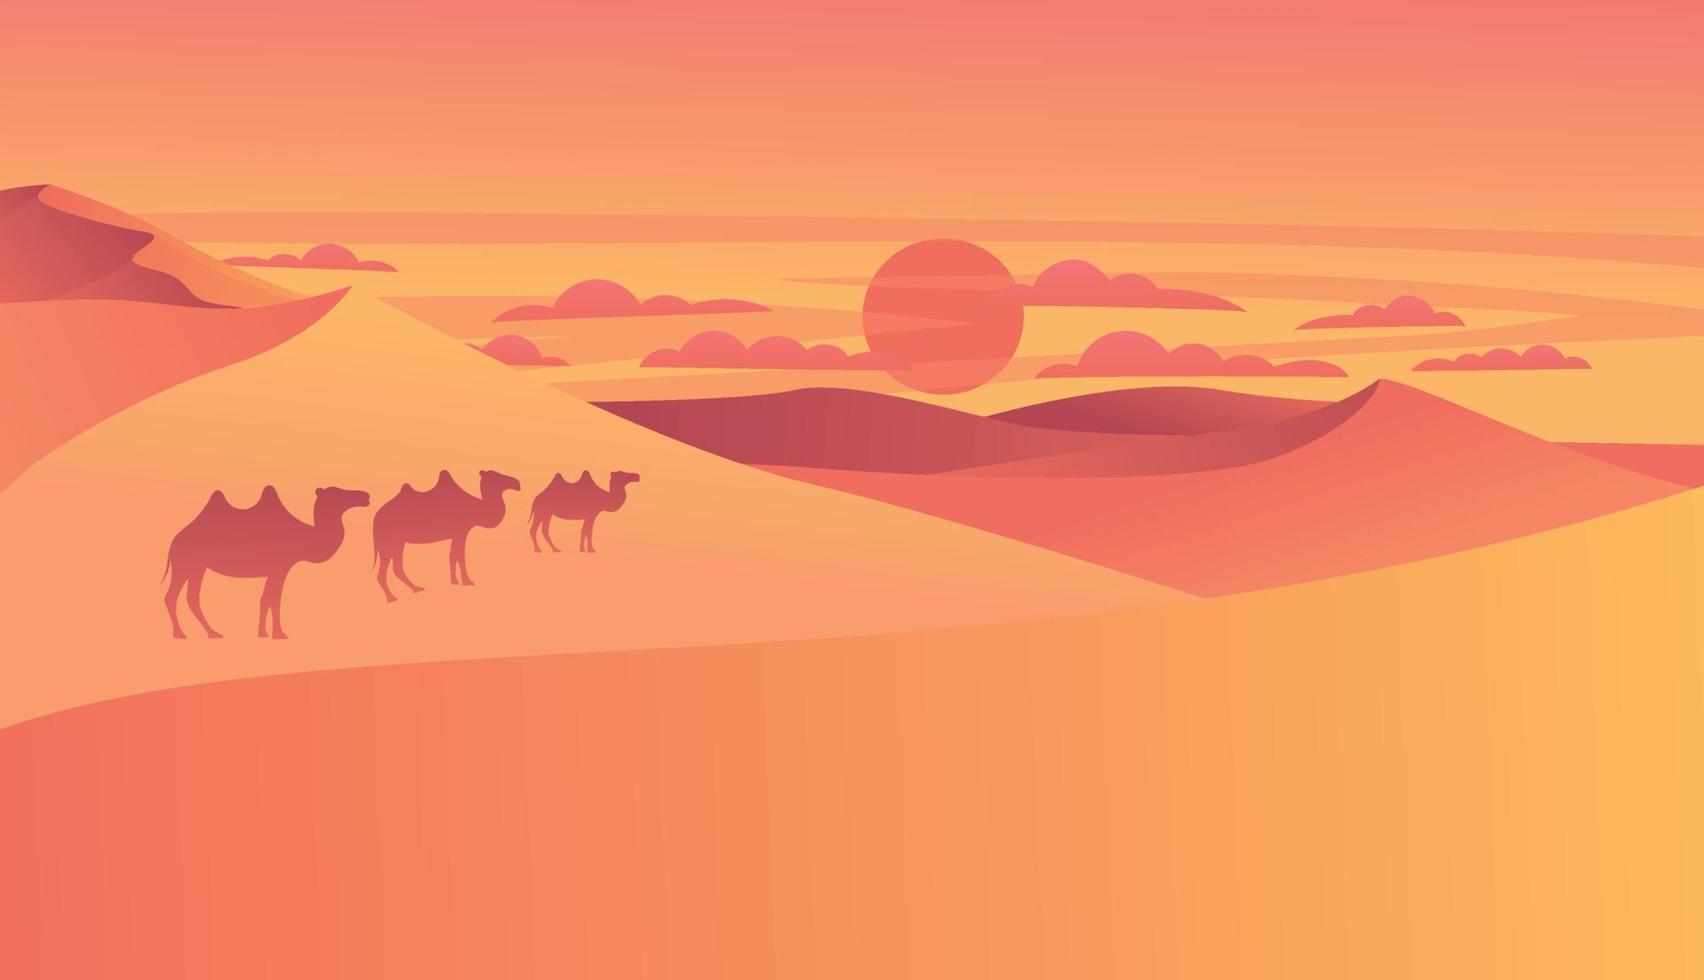 paisaje desértico con dunas de arena dorada por la mañana o por la noche con camellos a pie. fondo de naturaleza africana desierta seca y caliente con escena de colinas arenosas, ilustración vectorial de dibujos animados vector